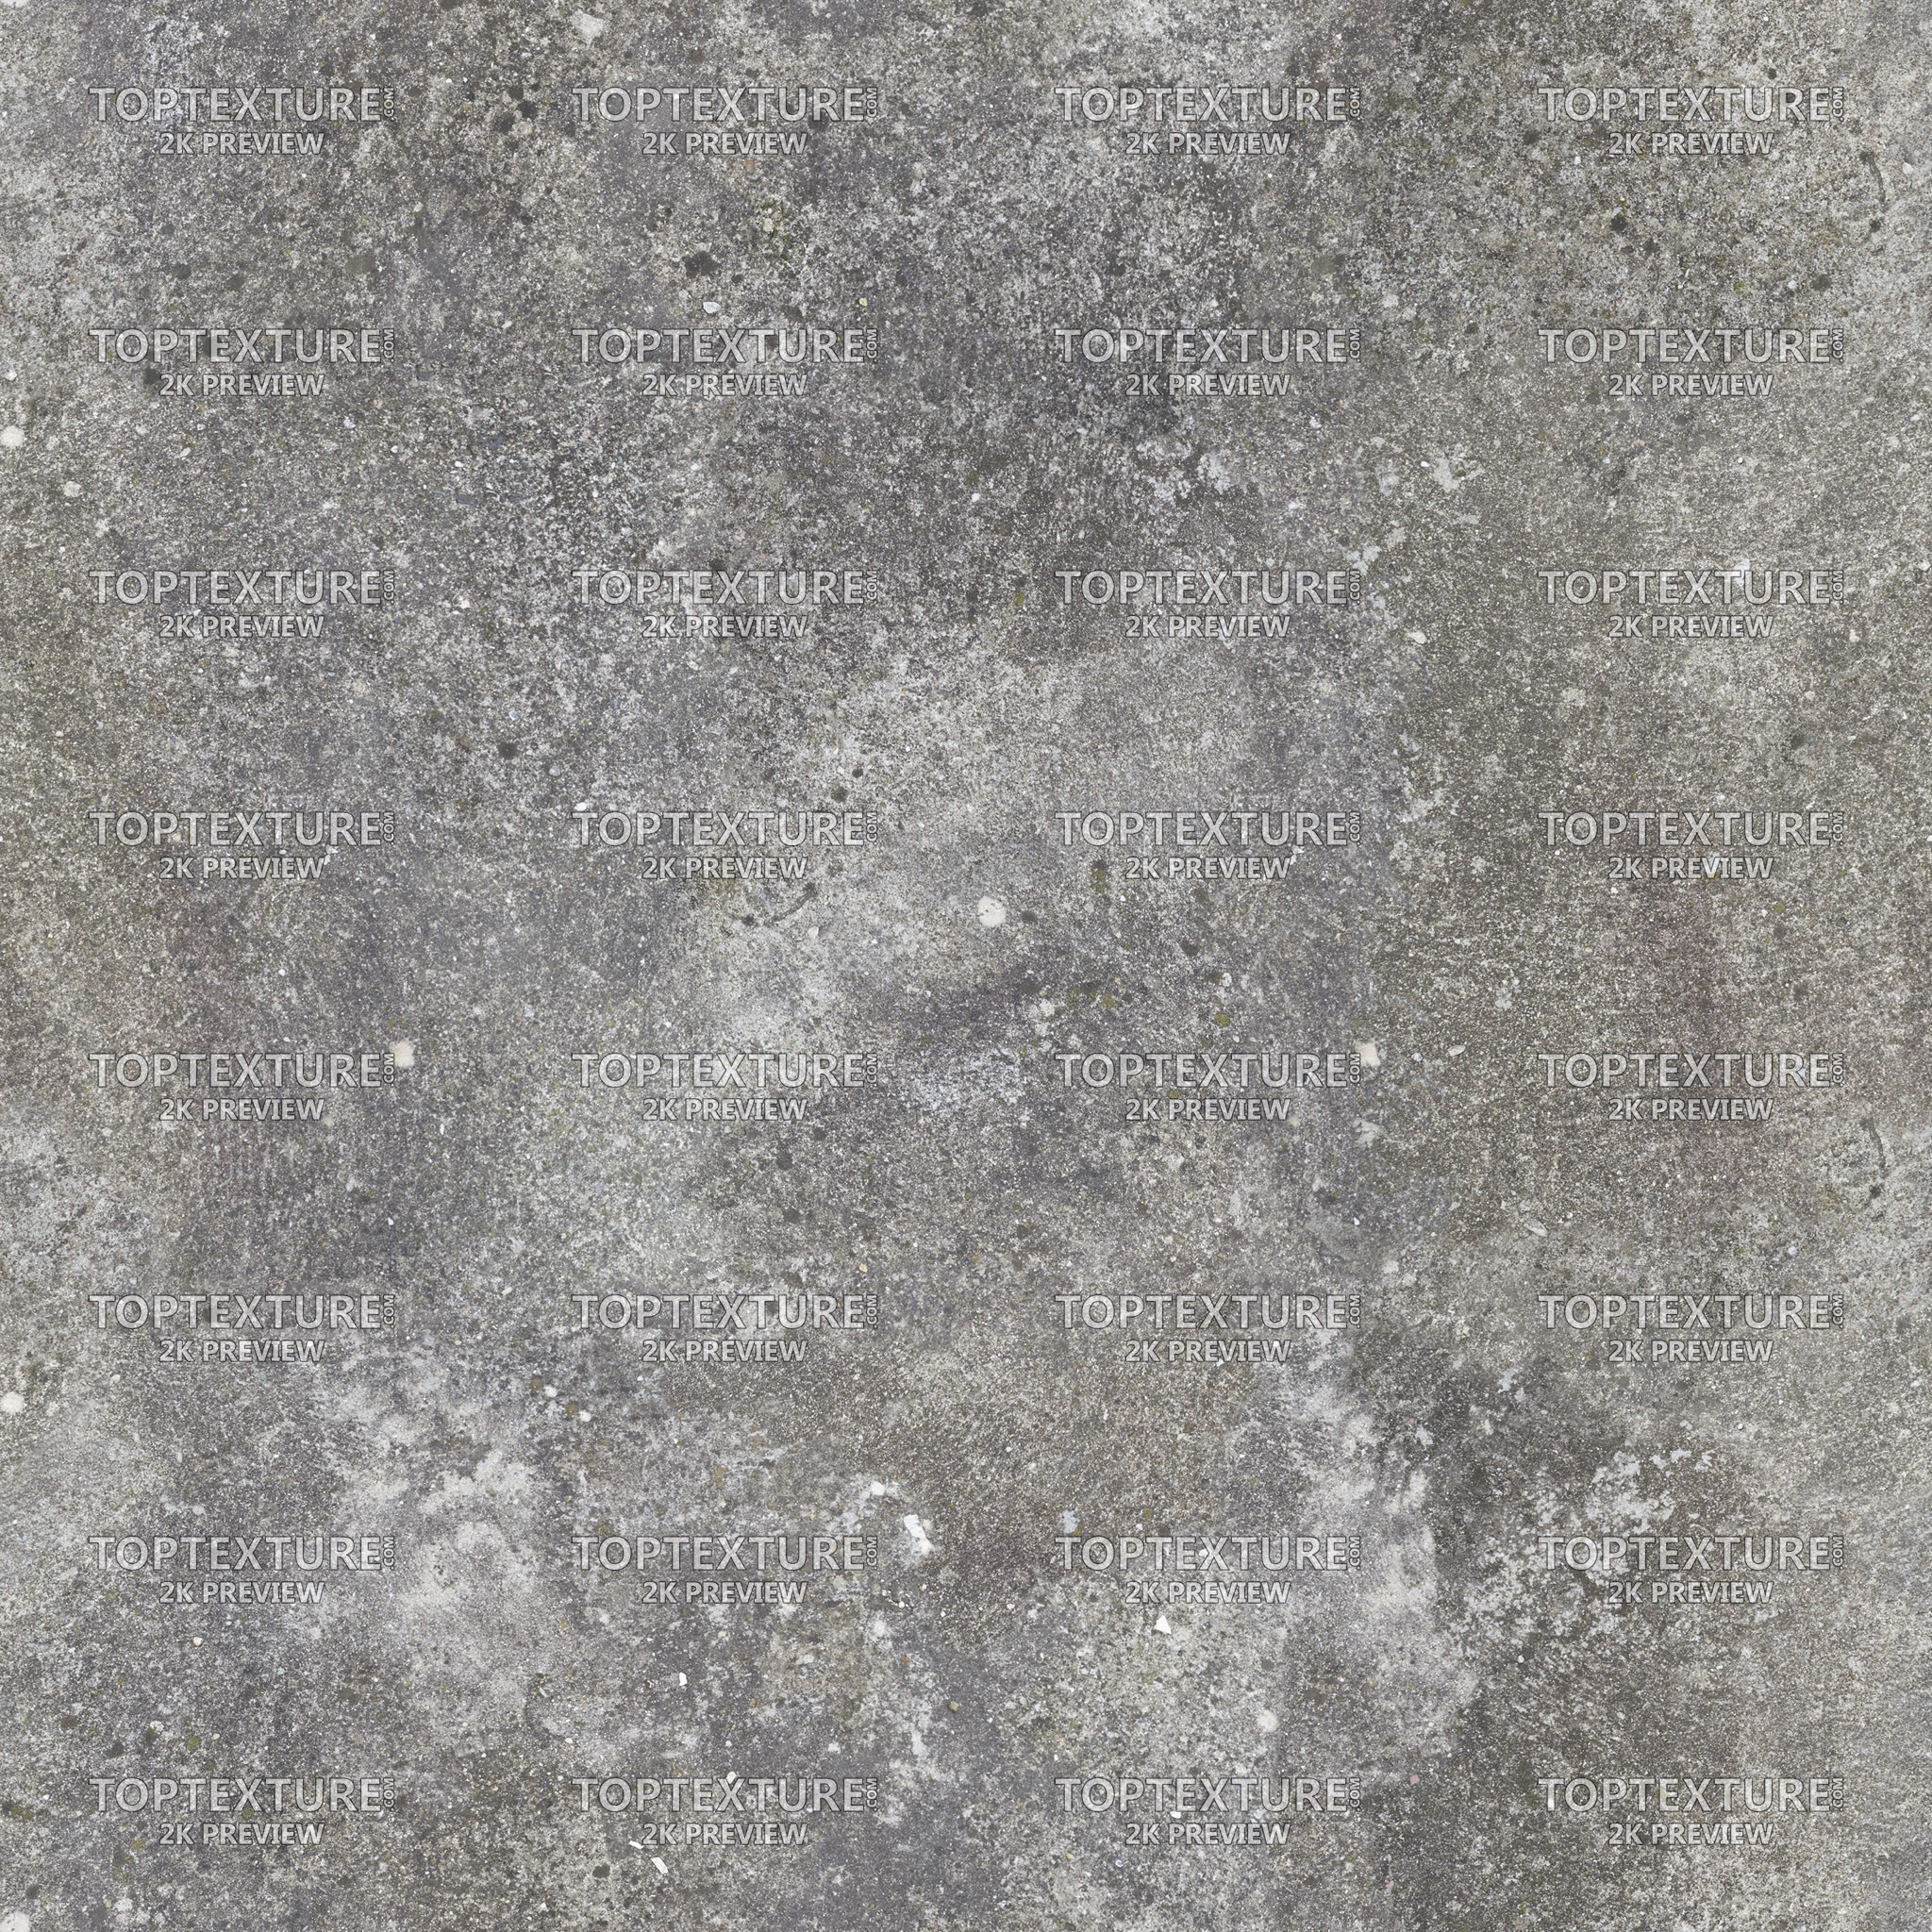 Dirty Dark Concrete Floor - Top Texture